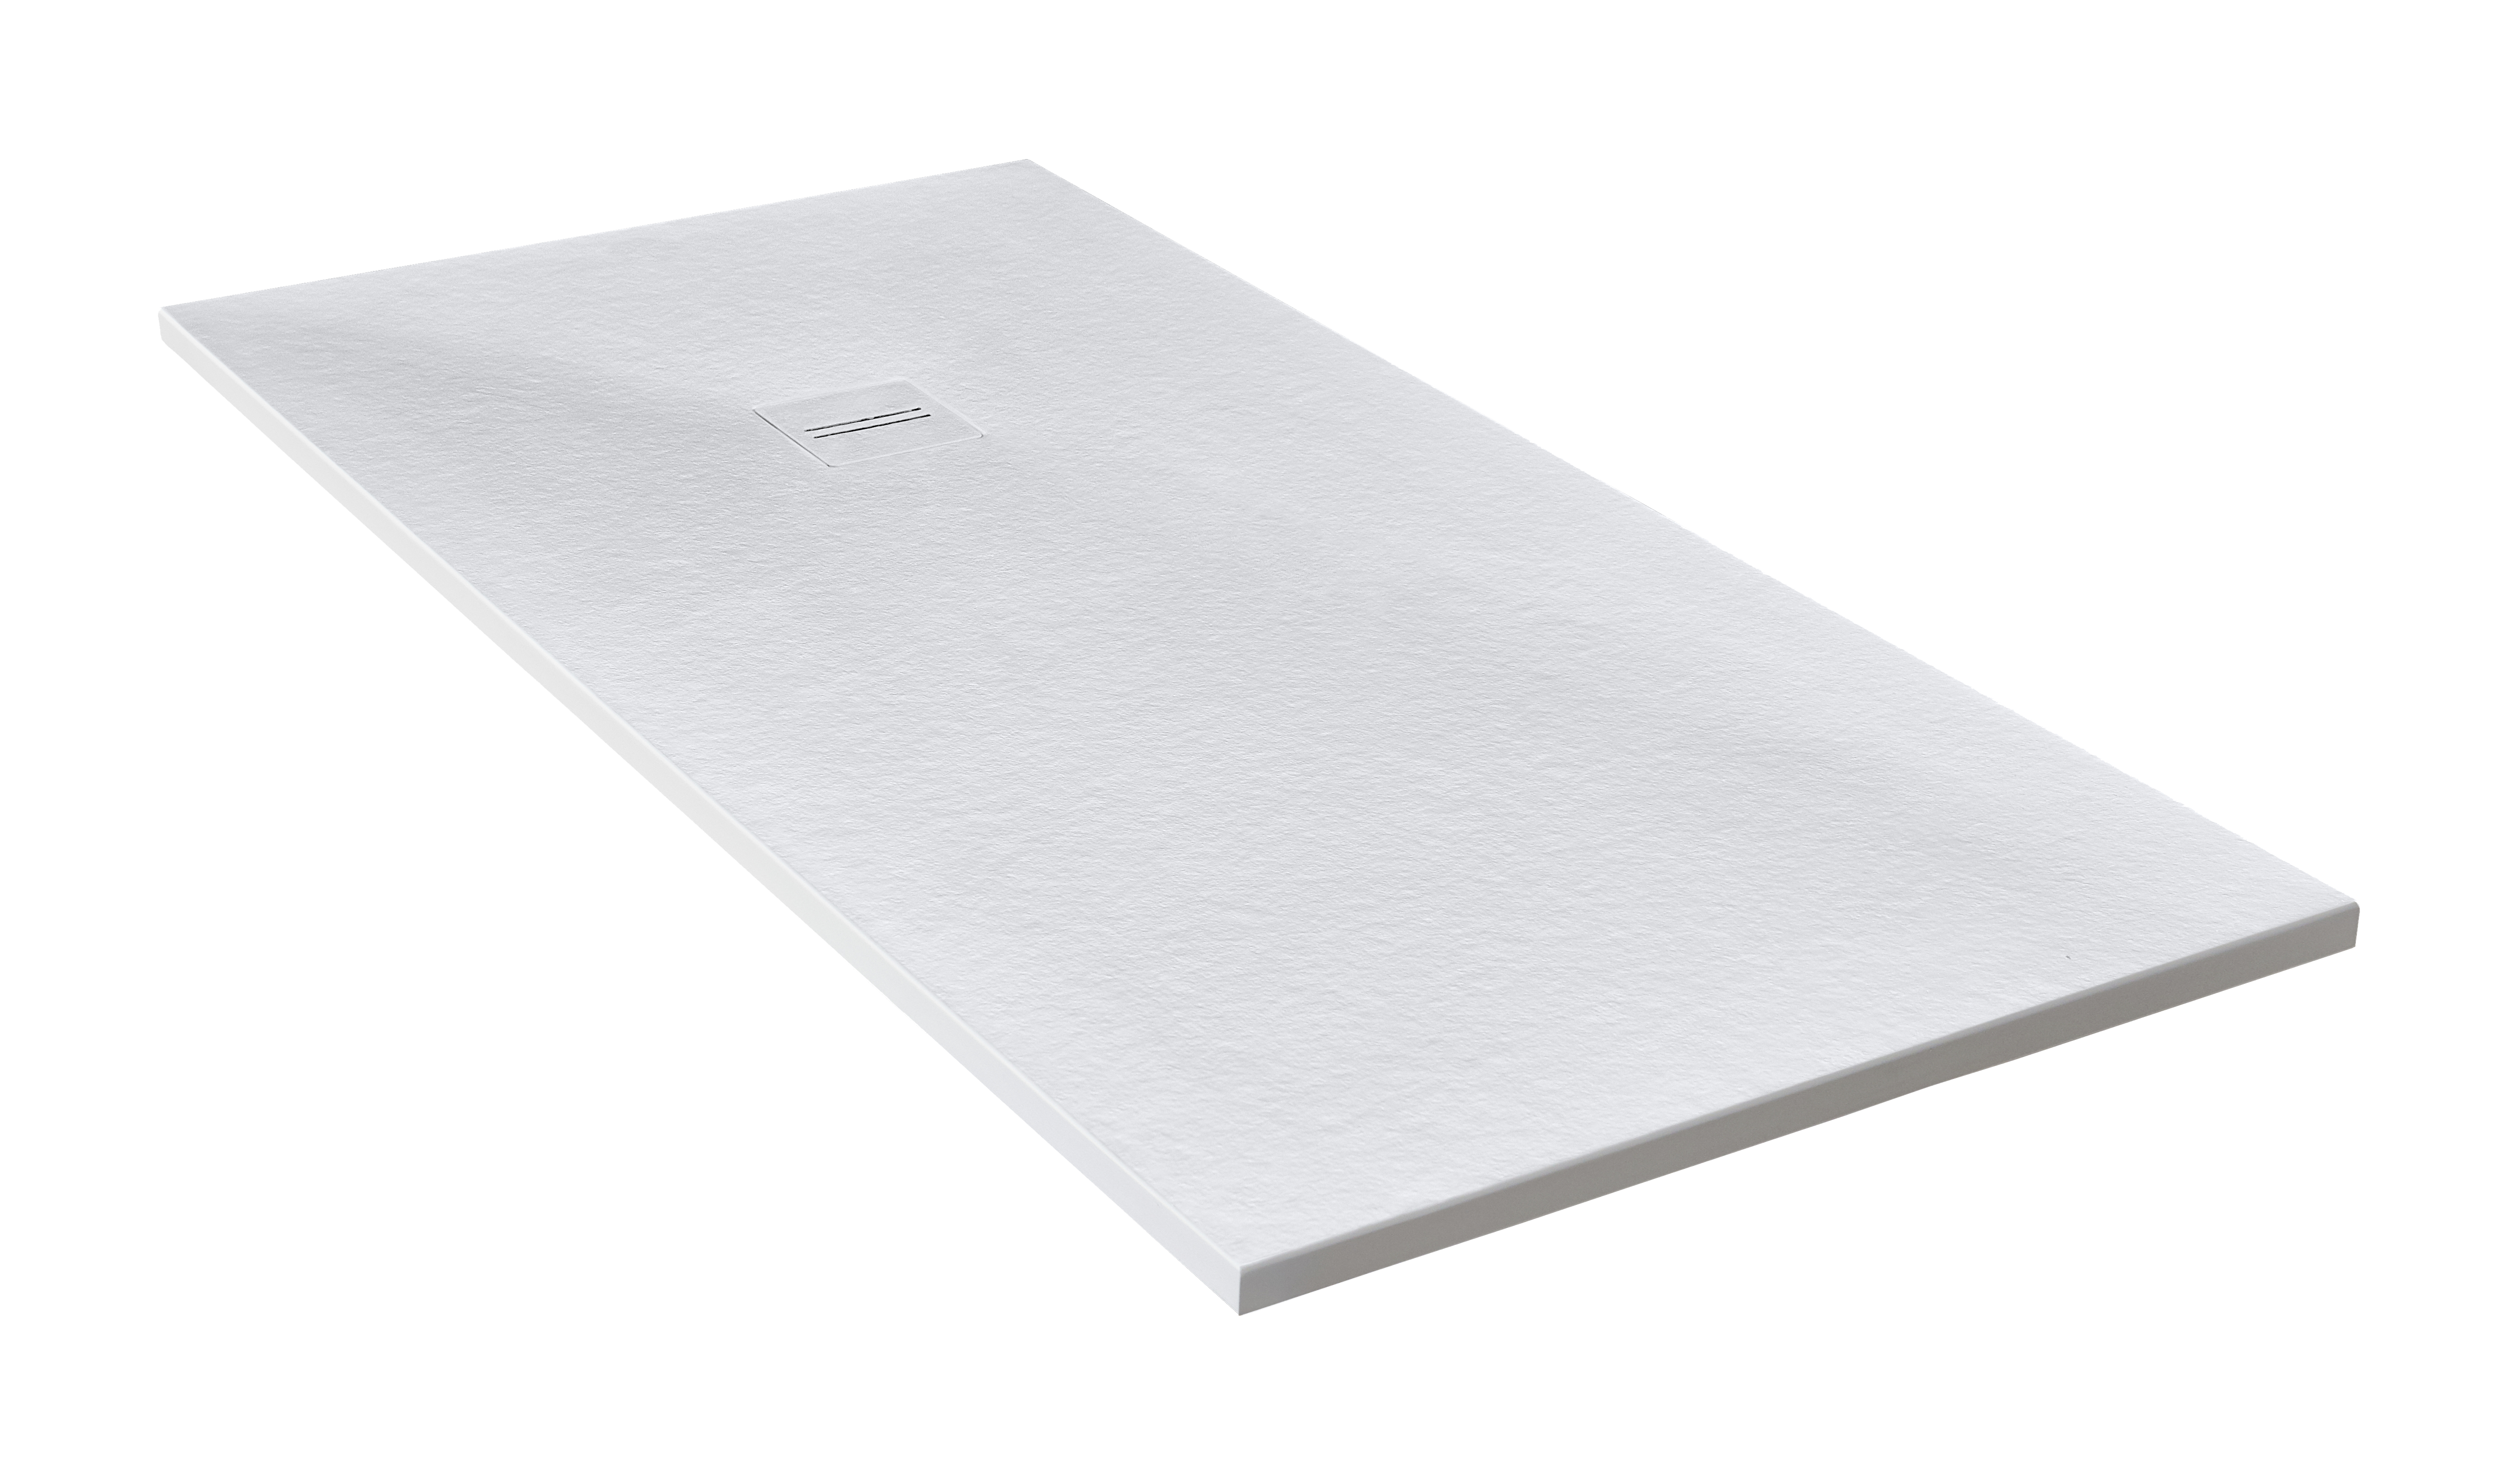 Plato de ducha cosmos 210x85 cm blanco